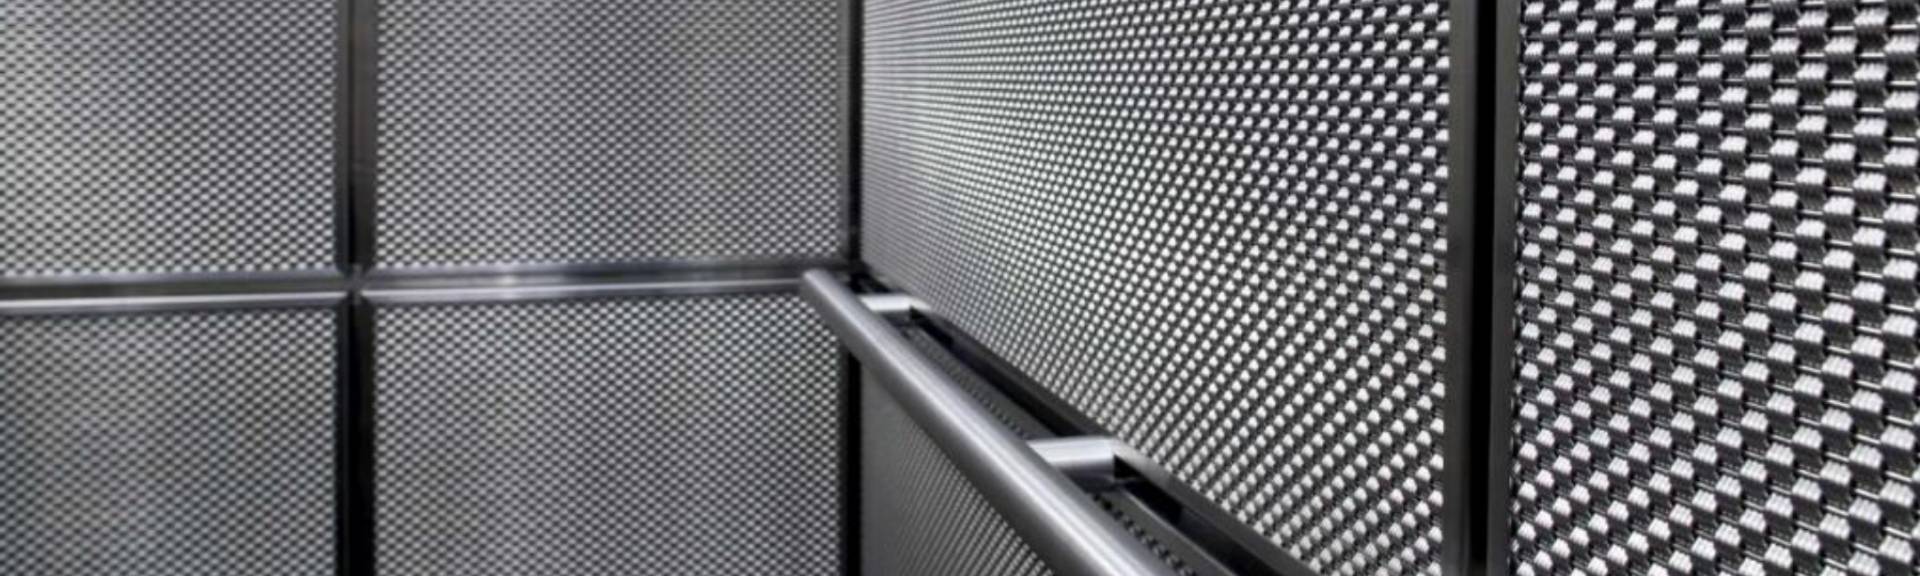 Aufzugs kabine mit Argger dekoratives Netz